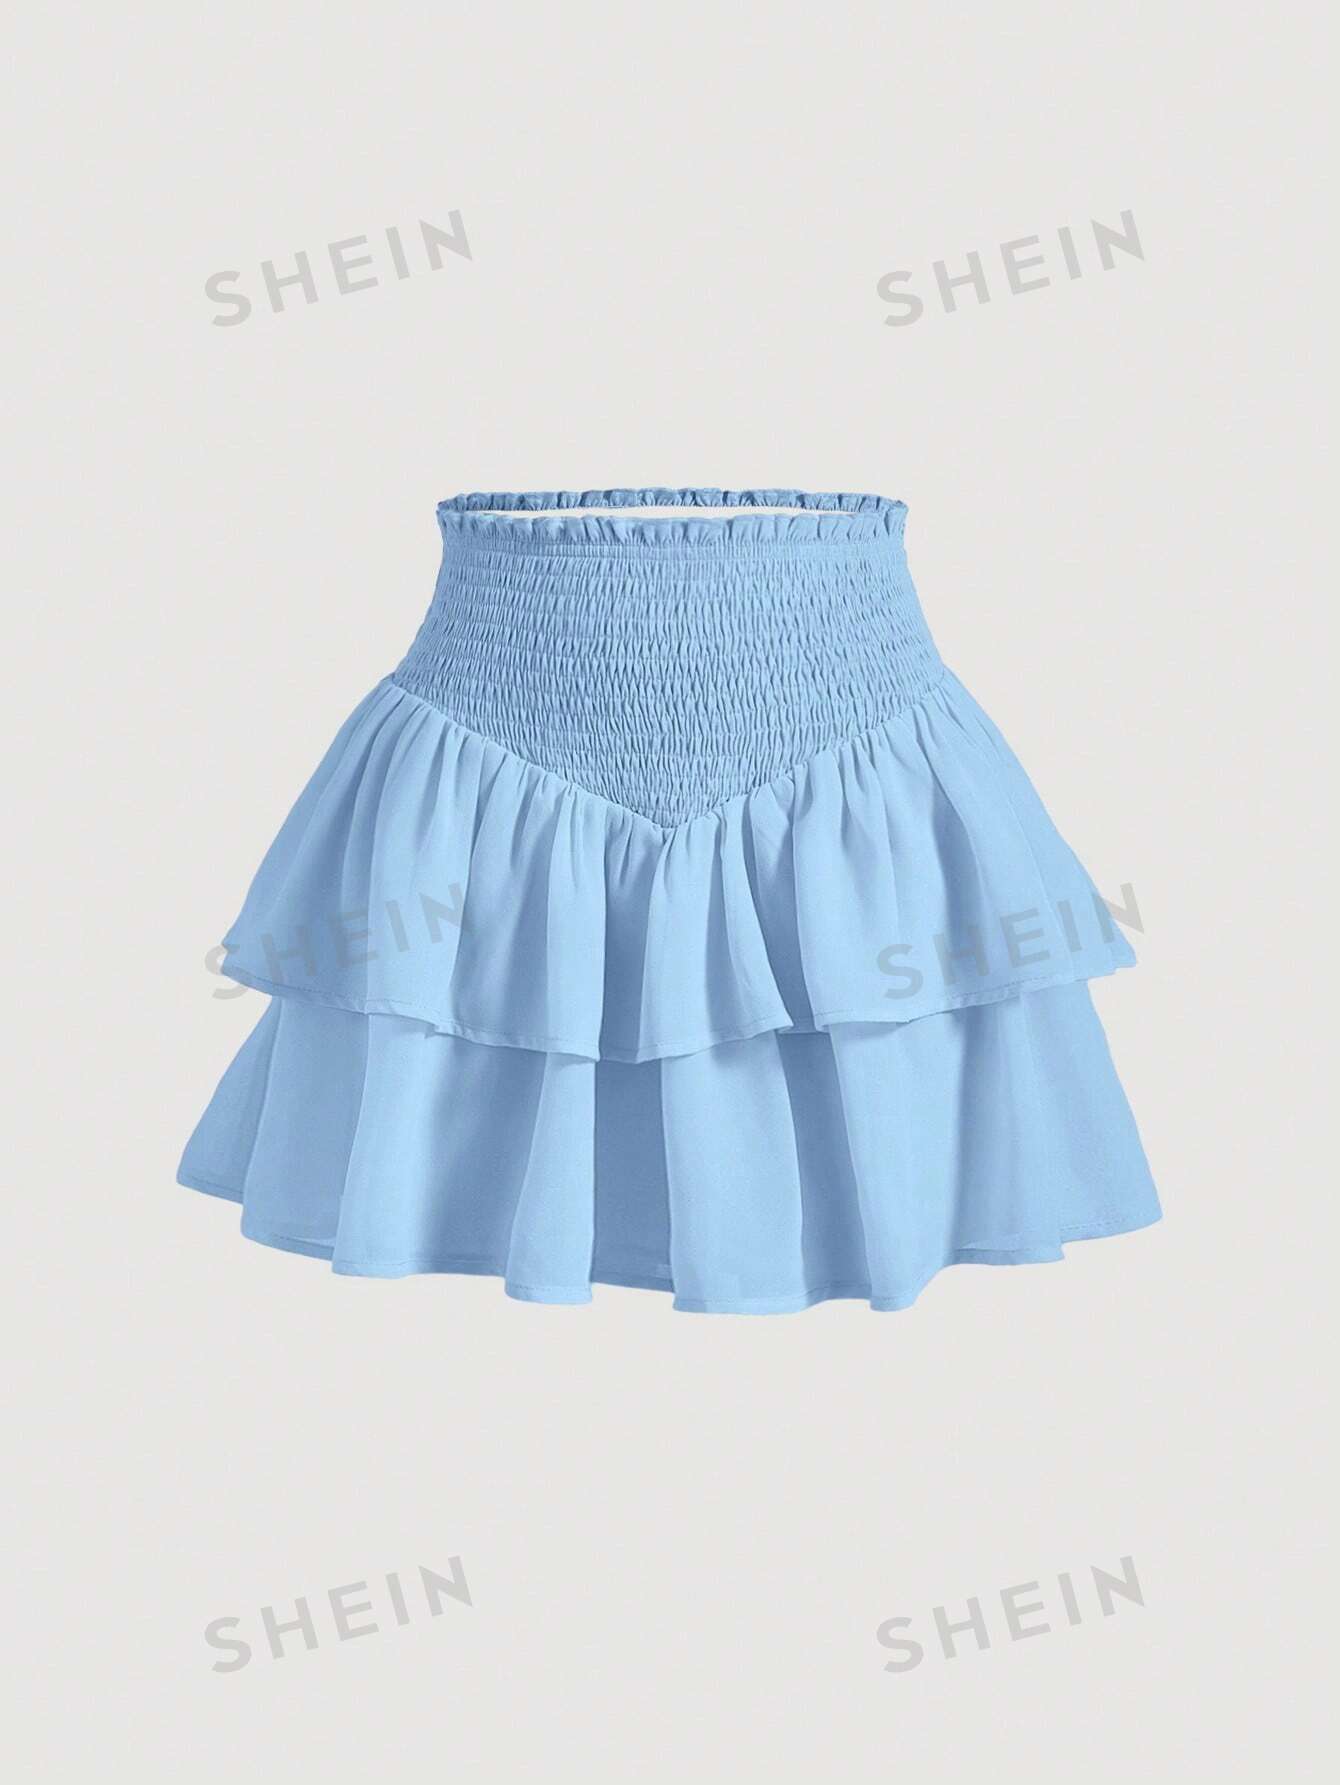 SHEIN MOD SHEIN MOD женская двухслойная мини-юбка с асимметричным подолом и рюшами и присборенной талией, голубые юбка в стиле харадзюку с завышенной талией летняя повседневная готическая юбка трапеция с асимметричным подолом новая модная одежда для р